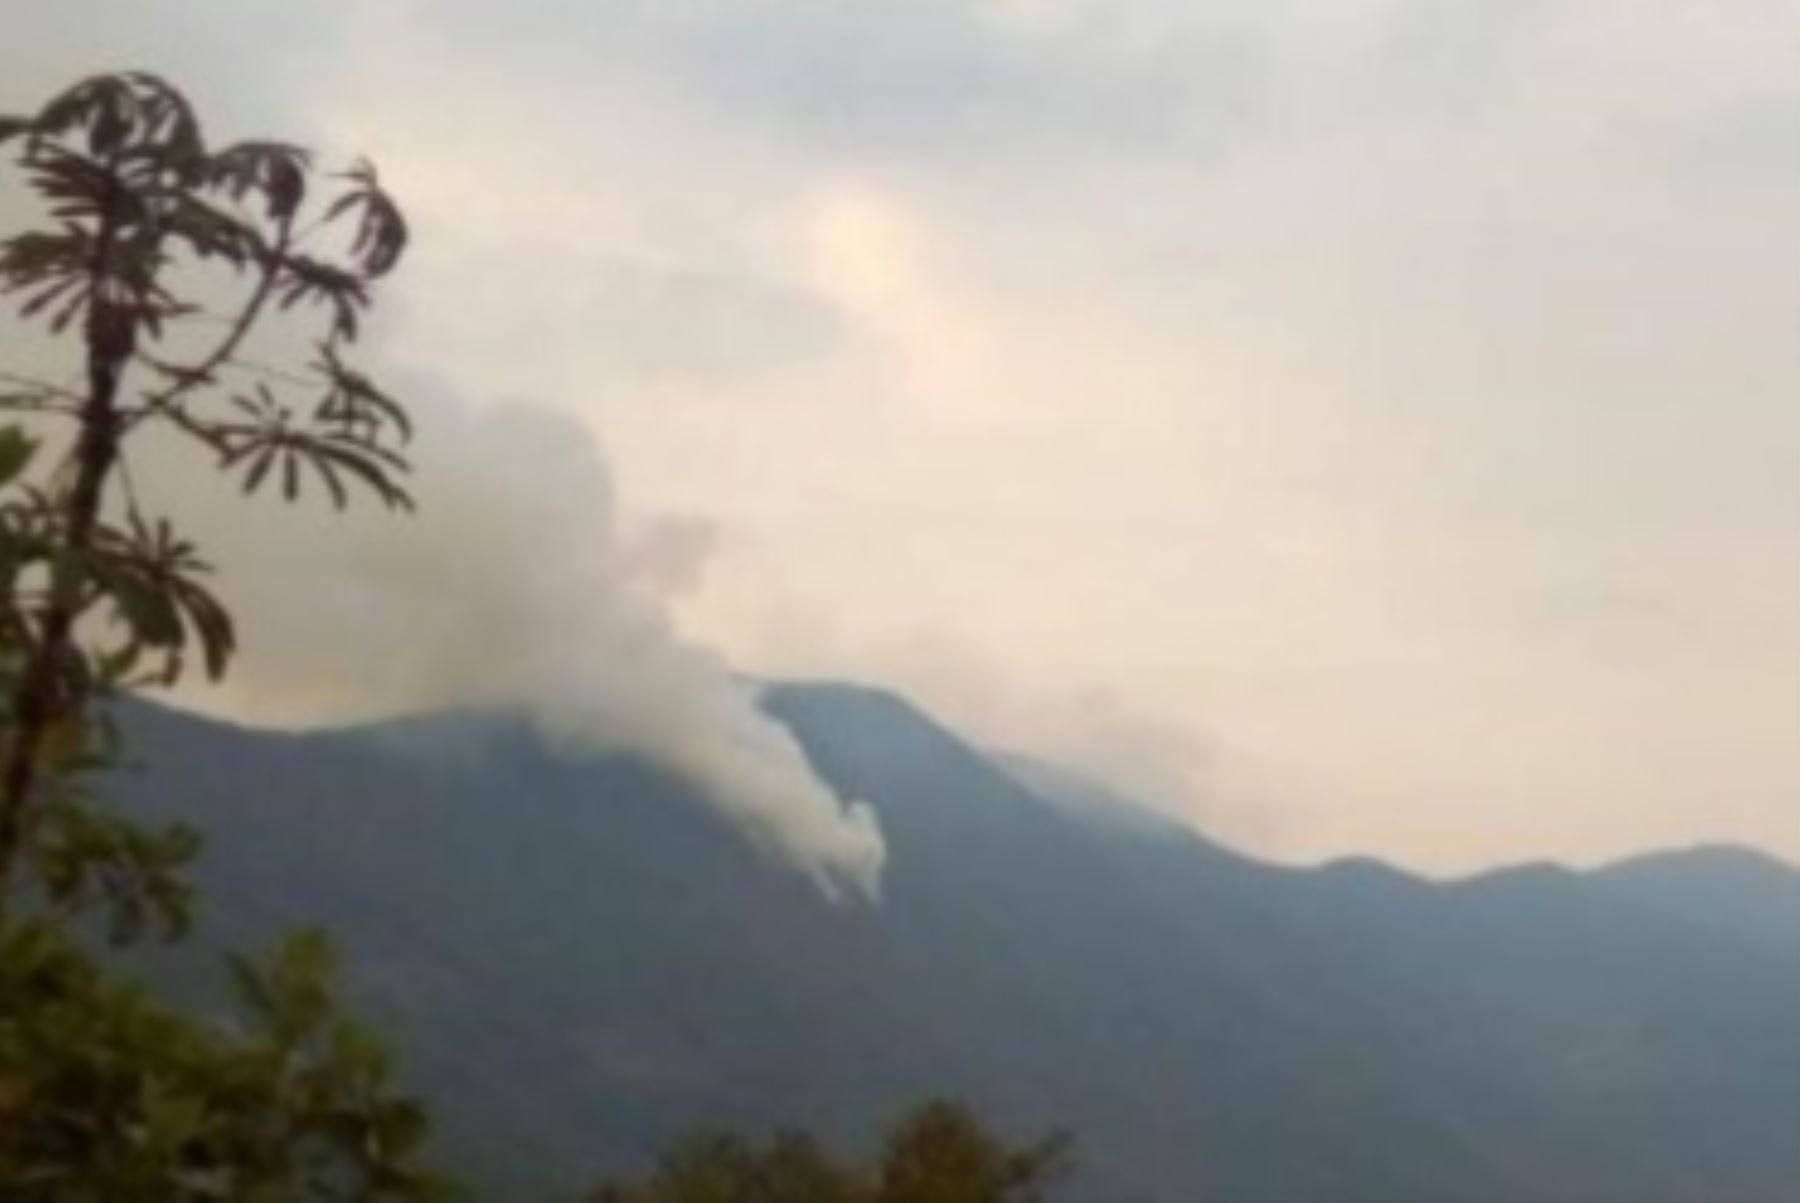 Incendios forestales registrados en Puno, Apurímac, Cusco y Amazonas fueron controlados por autoridades locales con apoyo de diversas instituciones y la población.